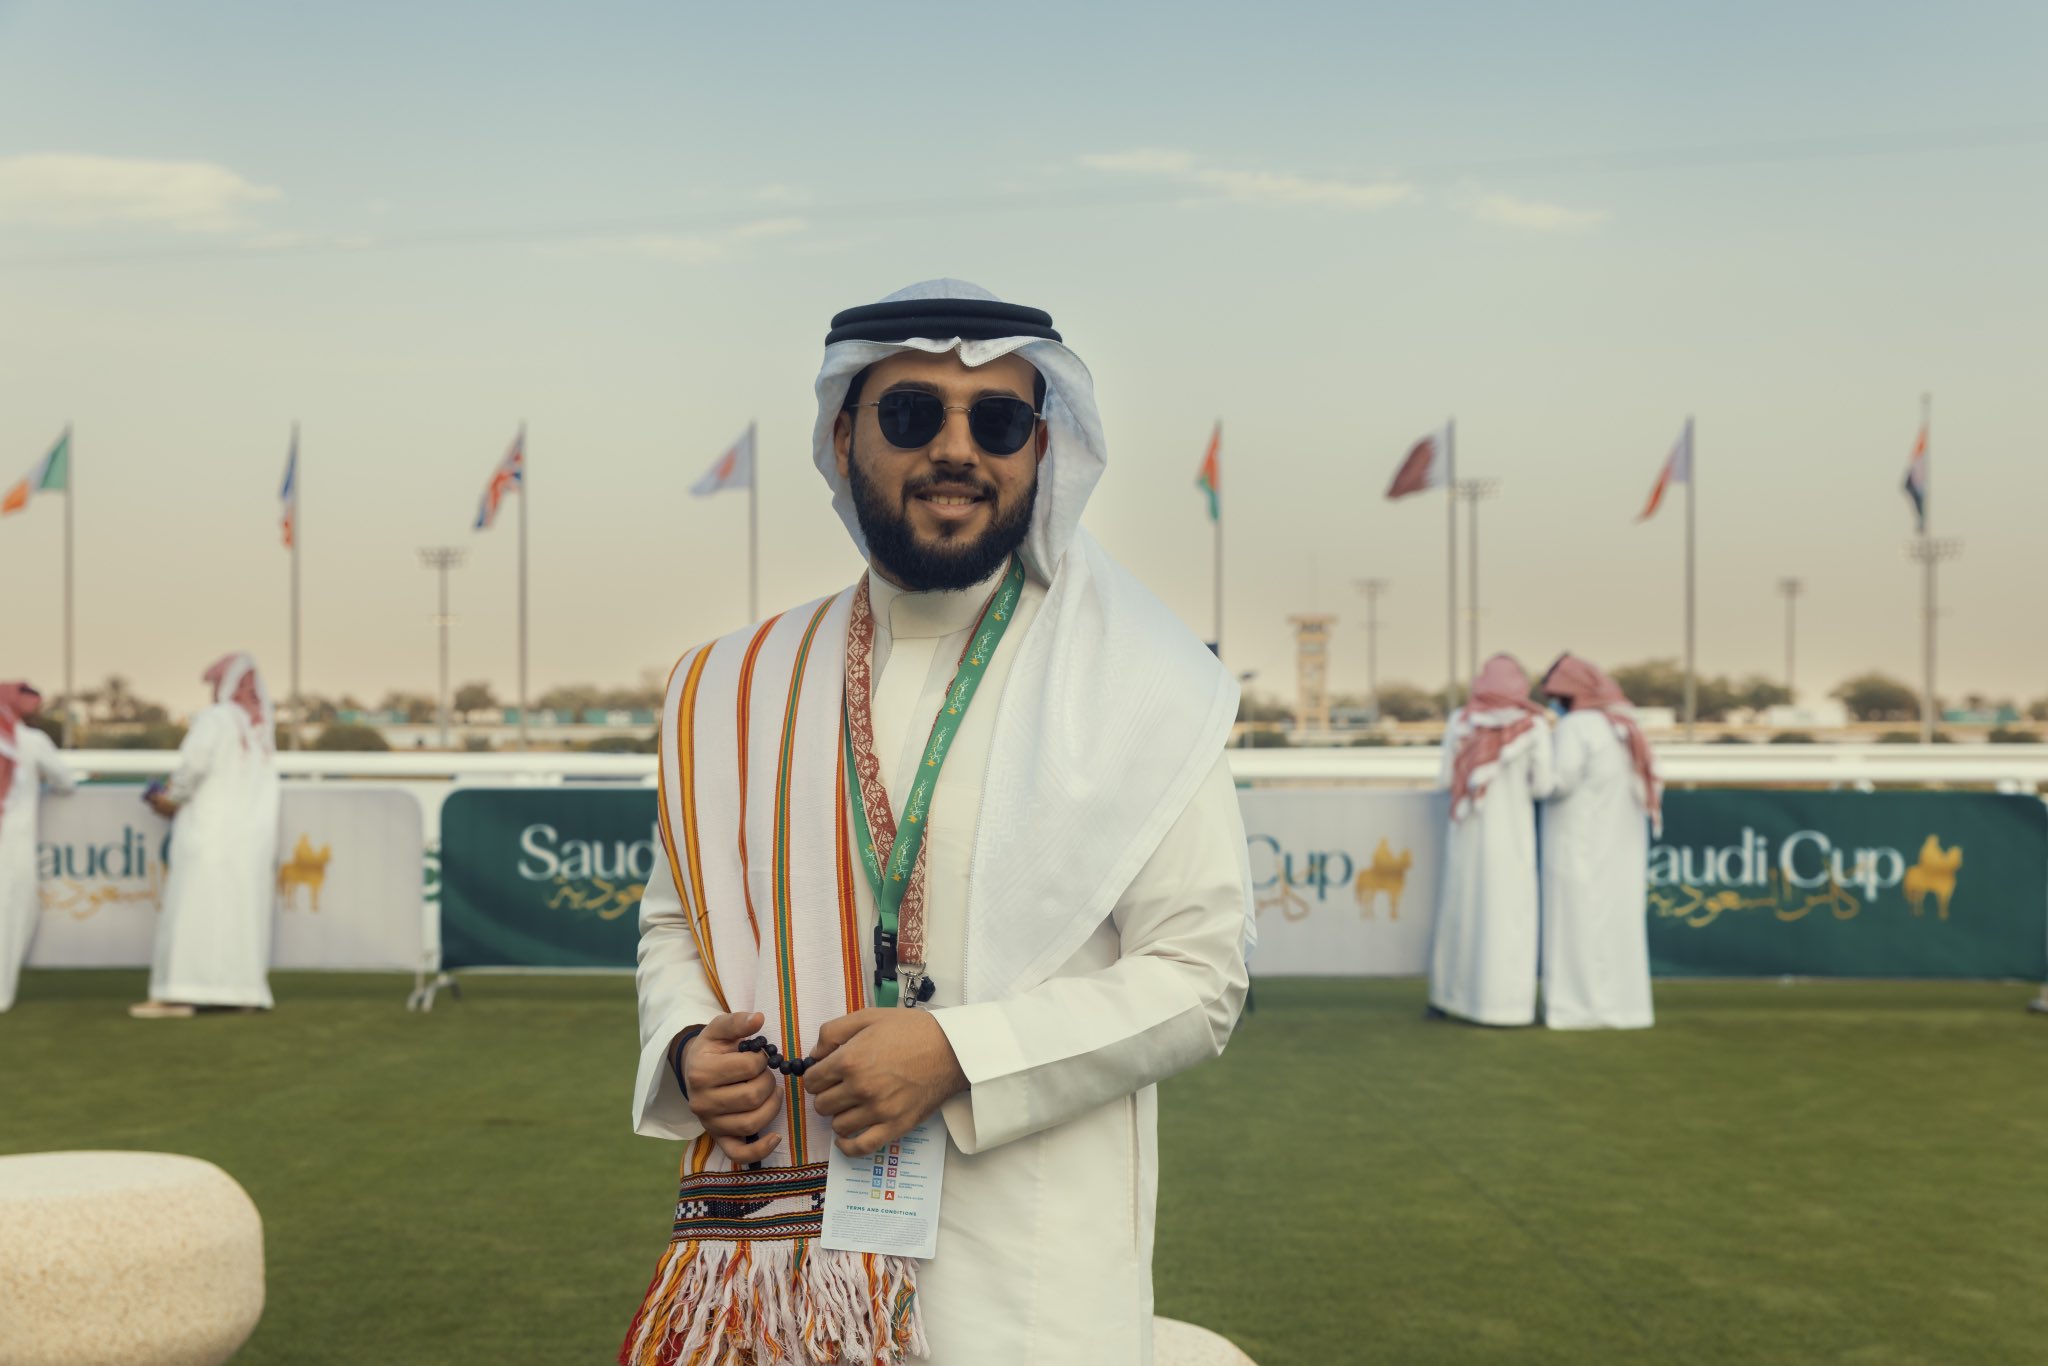 20 صورة من فعاليات اليوم الأول لكأس السعودية 2022 